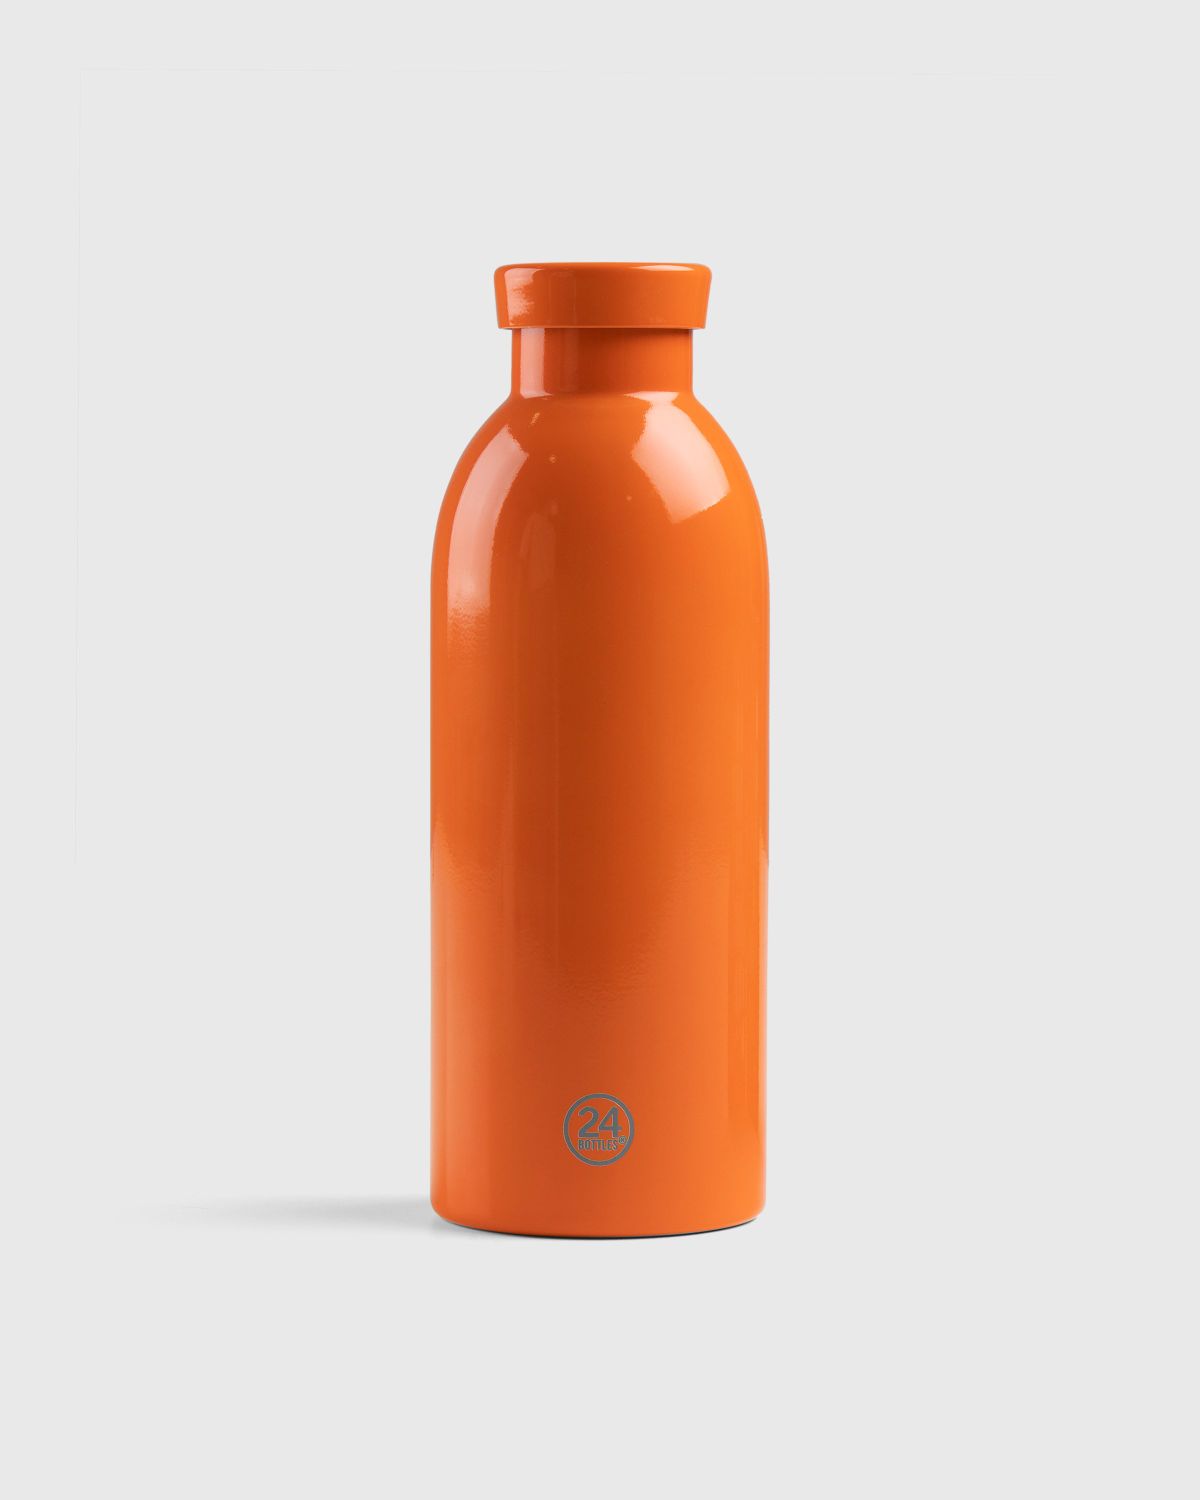 Stone Island – 97069 Clima Bottle Orange - Lifestyle - Orange - Image 2